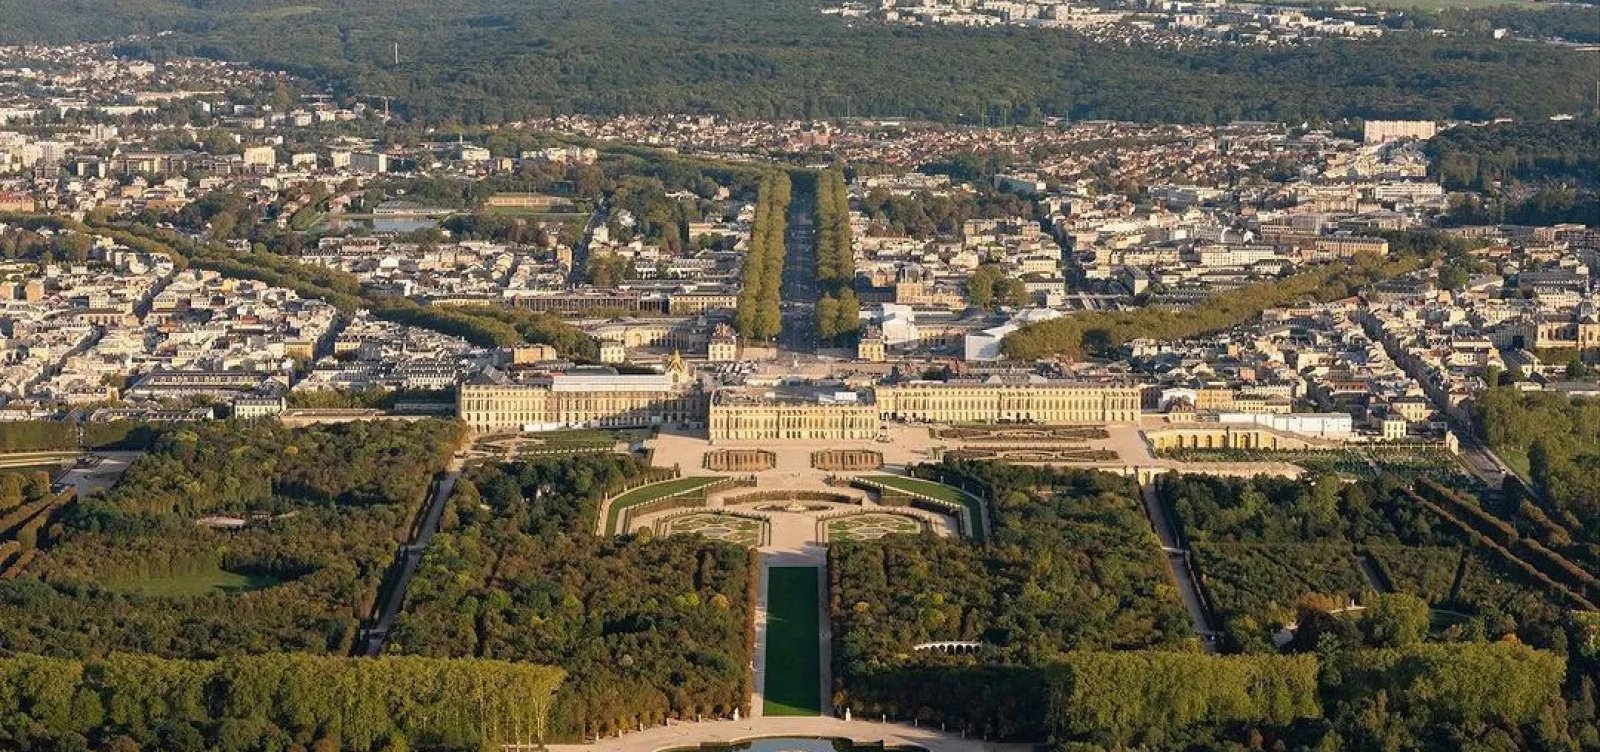 Palácio de Versalhes é esvaziado para 'operação de segurança' após denúncia 